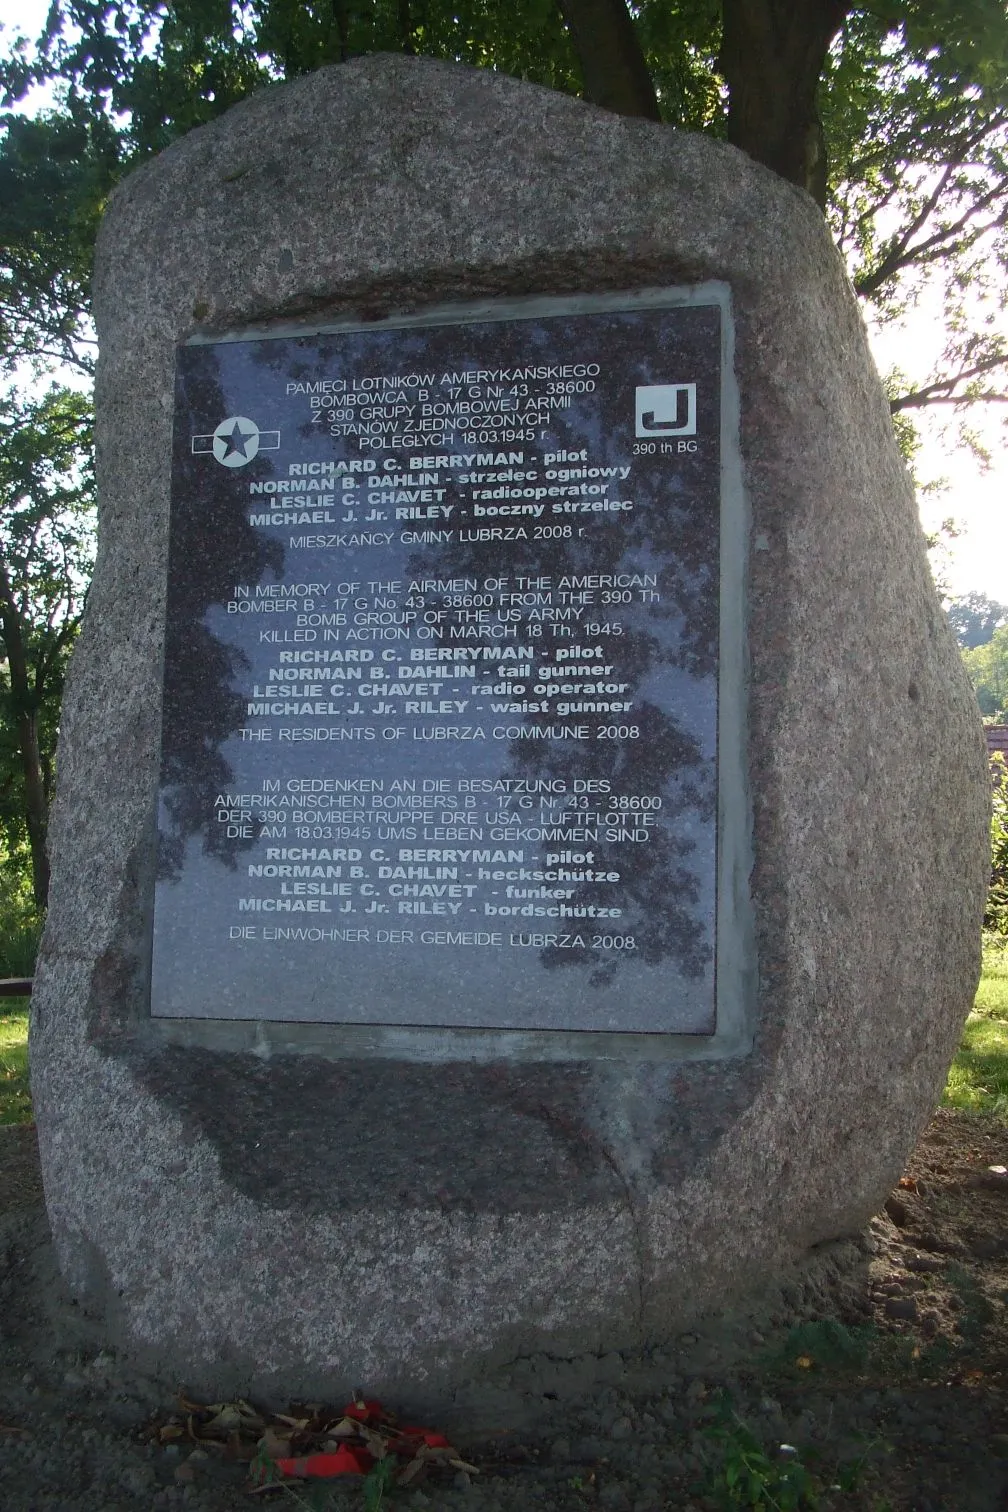 Photo showing: Pomnik ku pamięci lotników amerykańskich poległych 18 marca 1945 roku